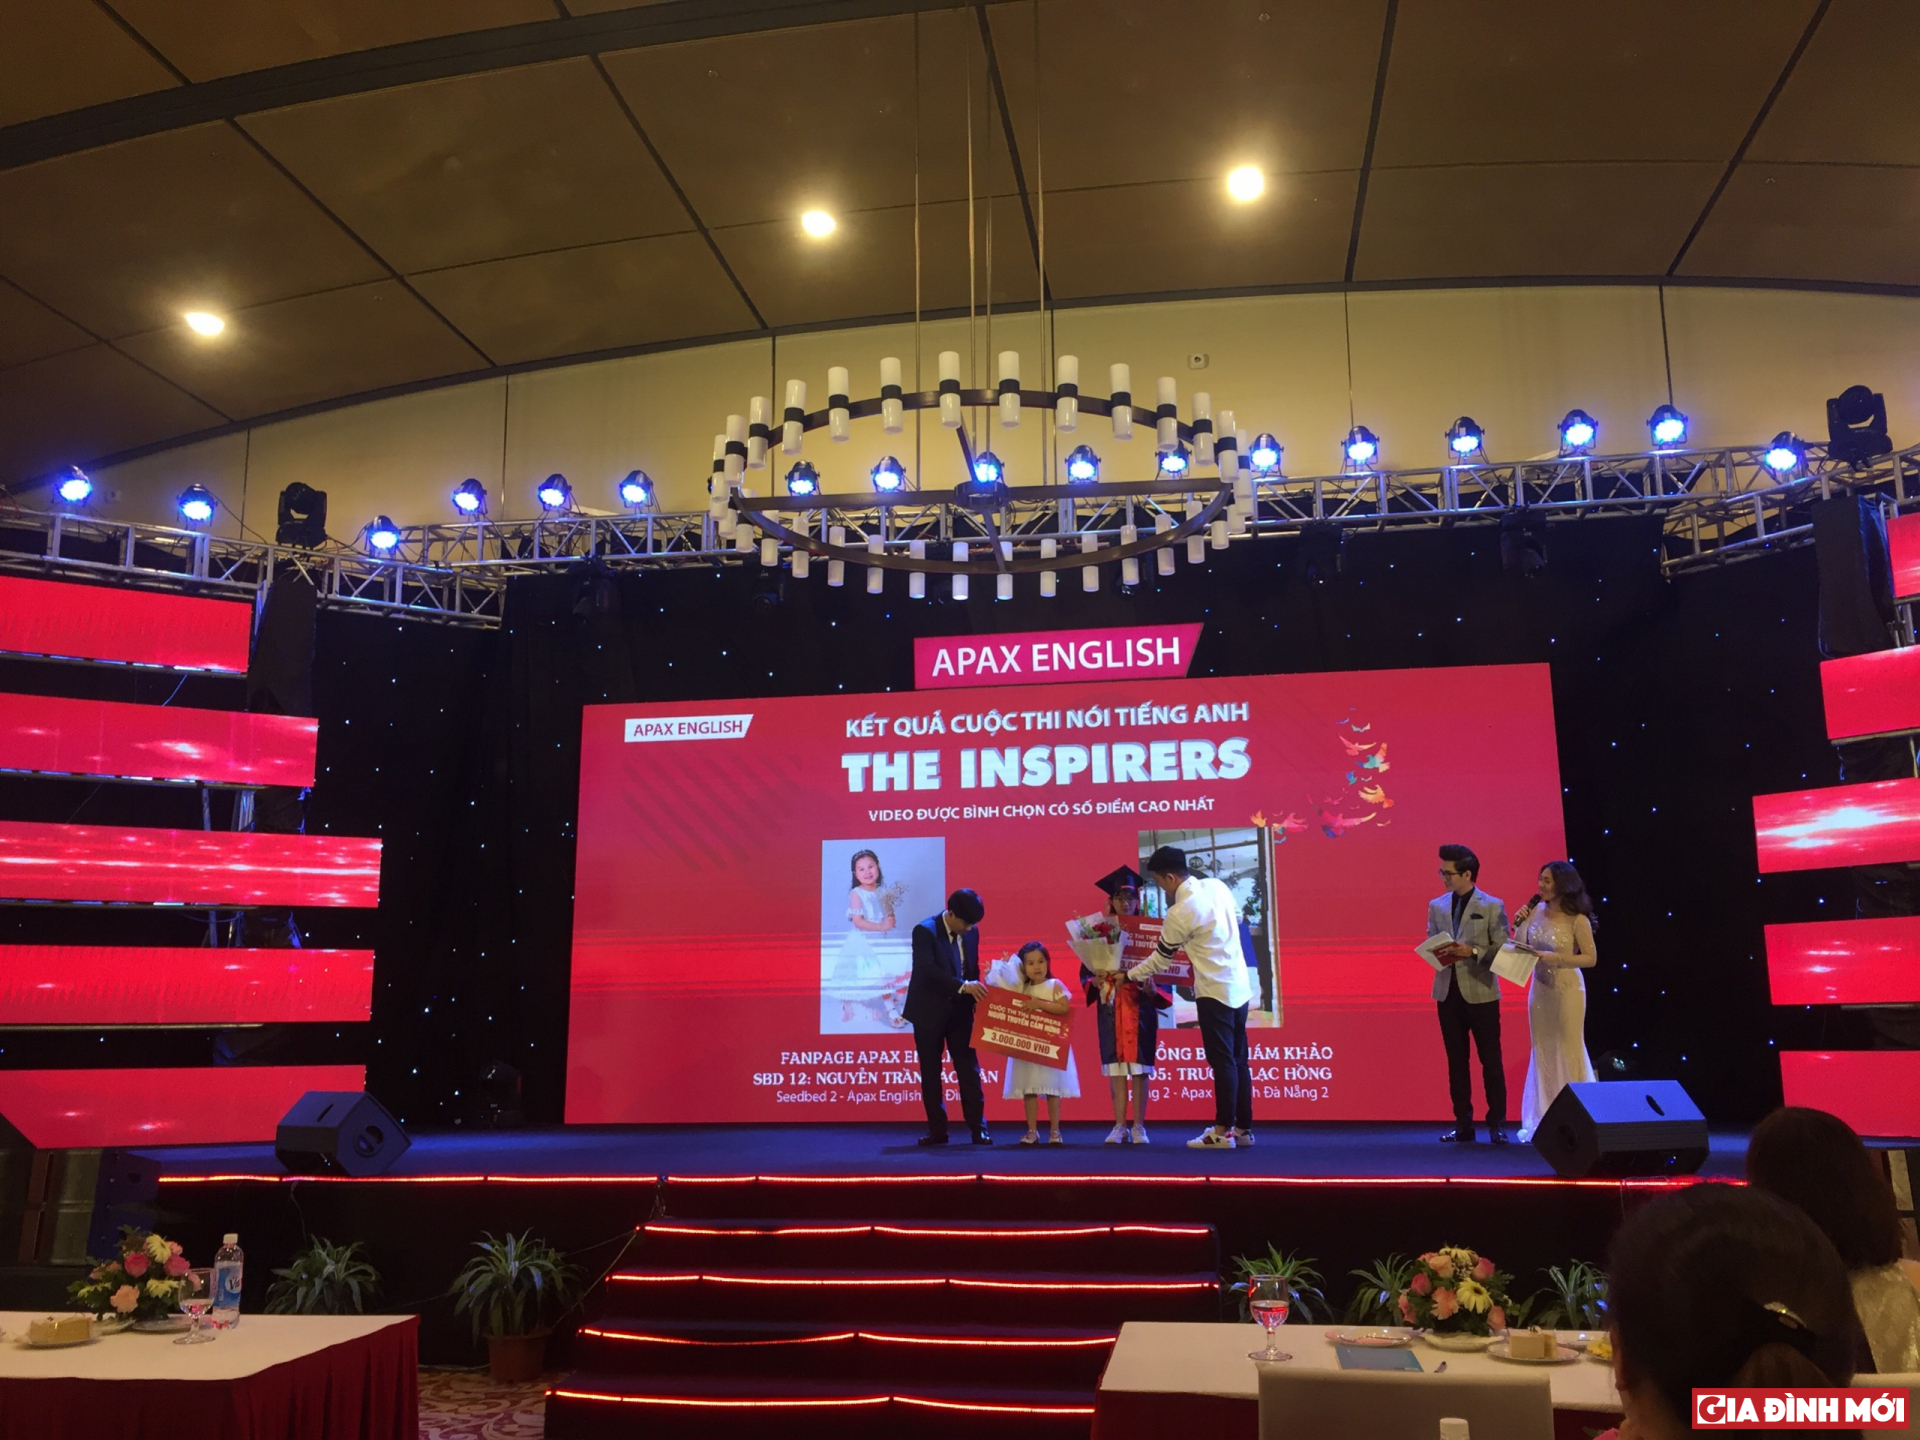 Shark Thủy trao 2 giải Nhất cuộc thi “The Inspirers - Người truyền cảm hứng” cho bé Nguyễn Trần Bảo Hân và bé Trương Lạc Hồng.